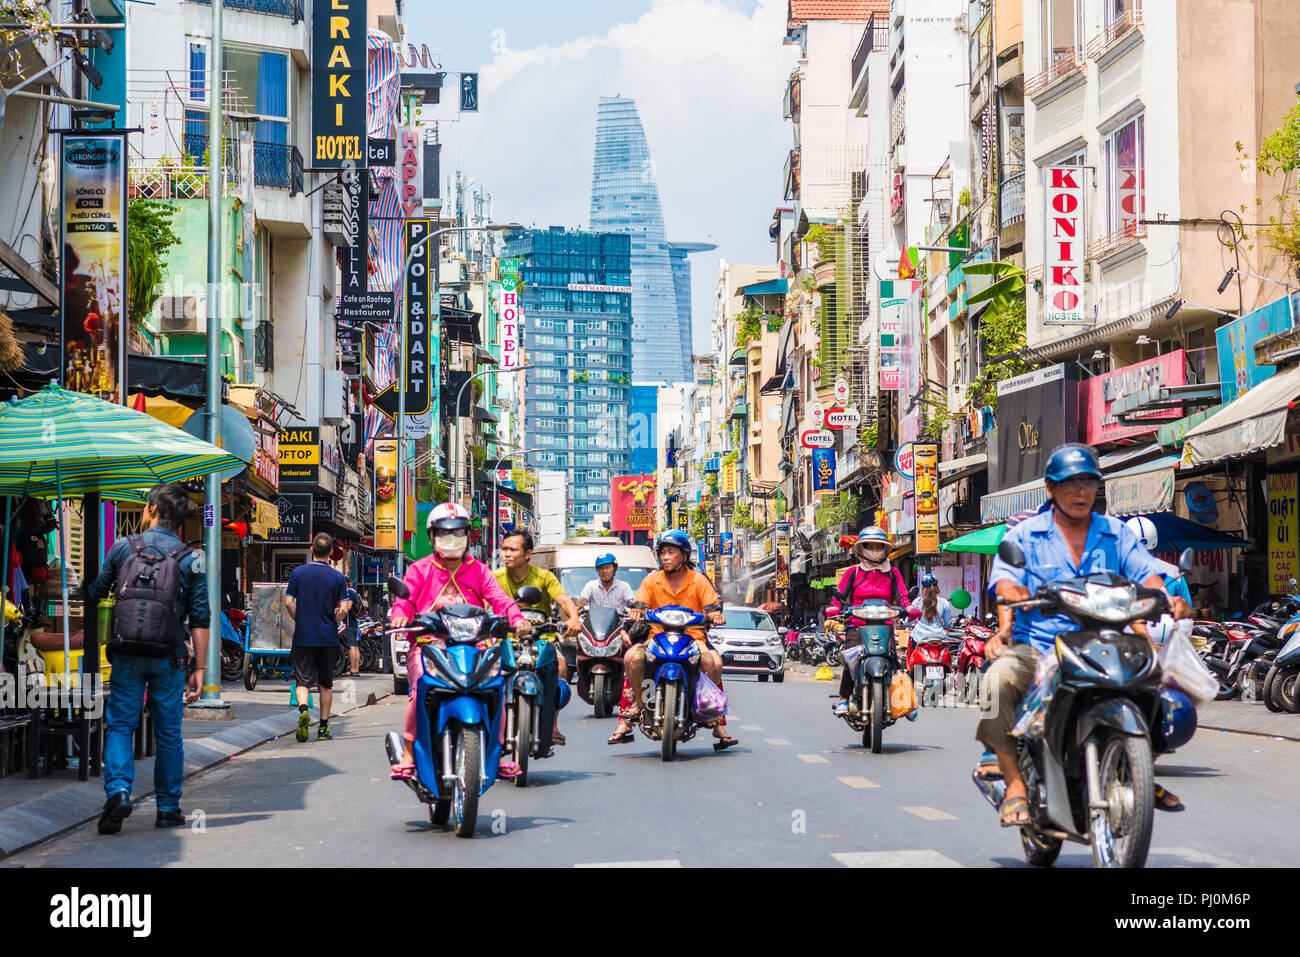 Ho Chi Minh City, Vietnam - die Bui Vien Street Perspektive, zahlreiche Firmenschilder, Menschen, Motorräder, bitexco Tower. Stockfoto